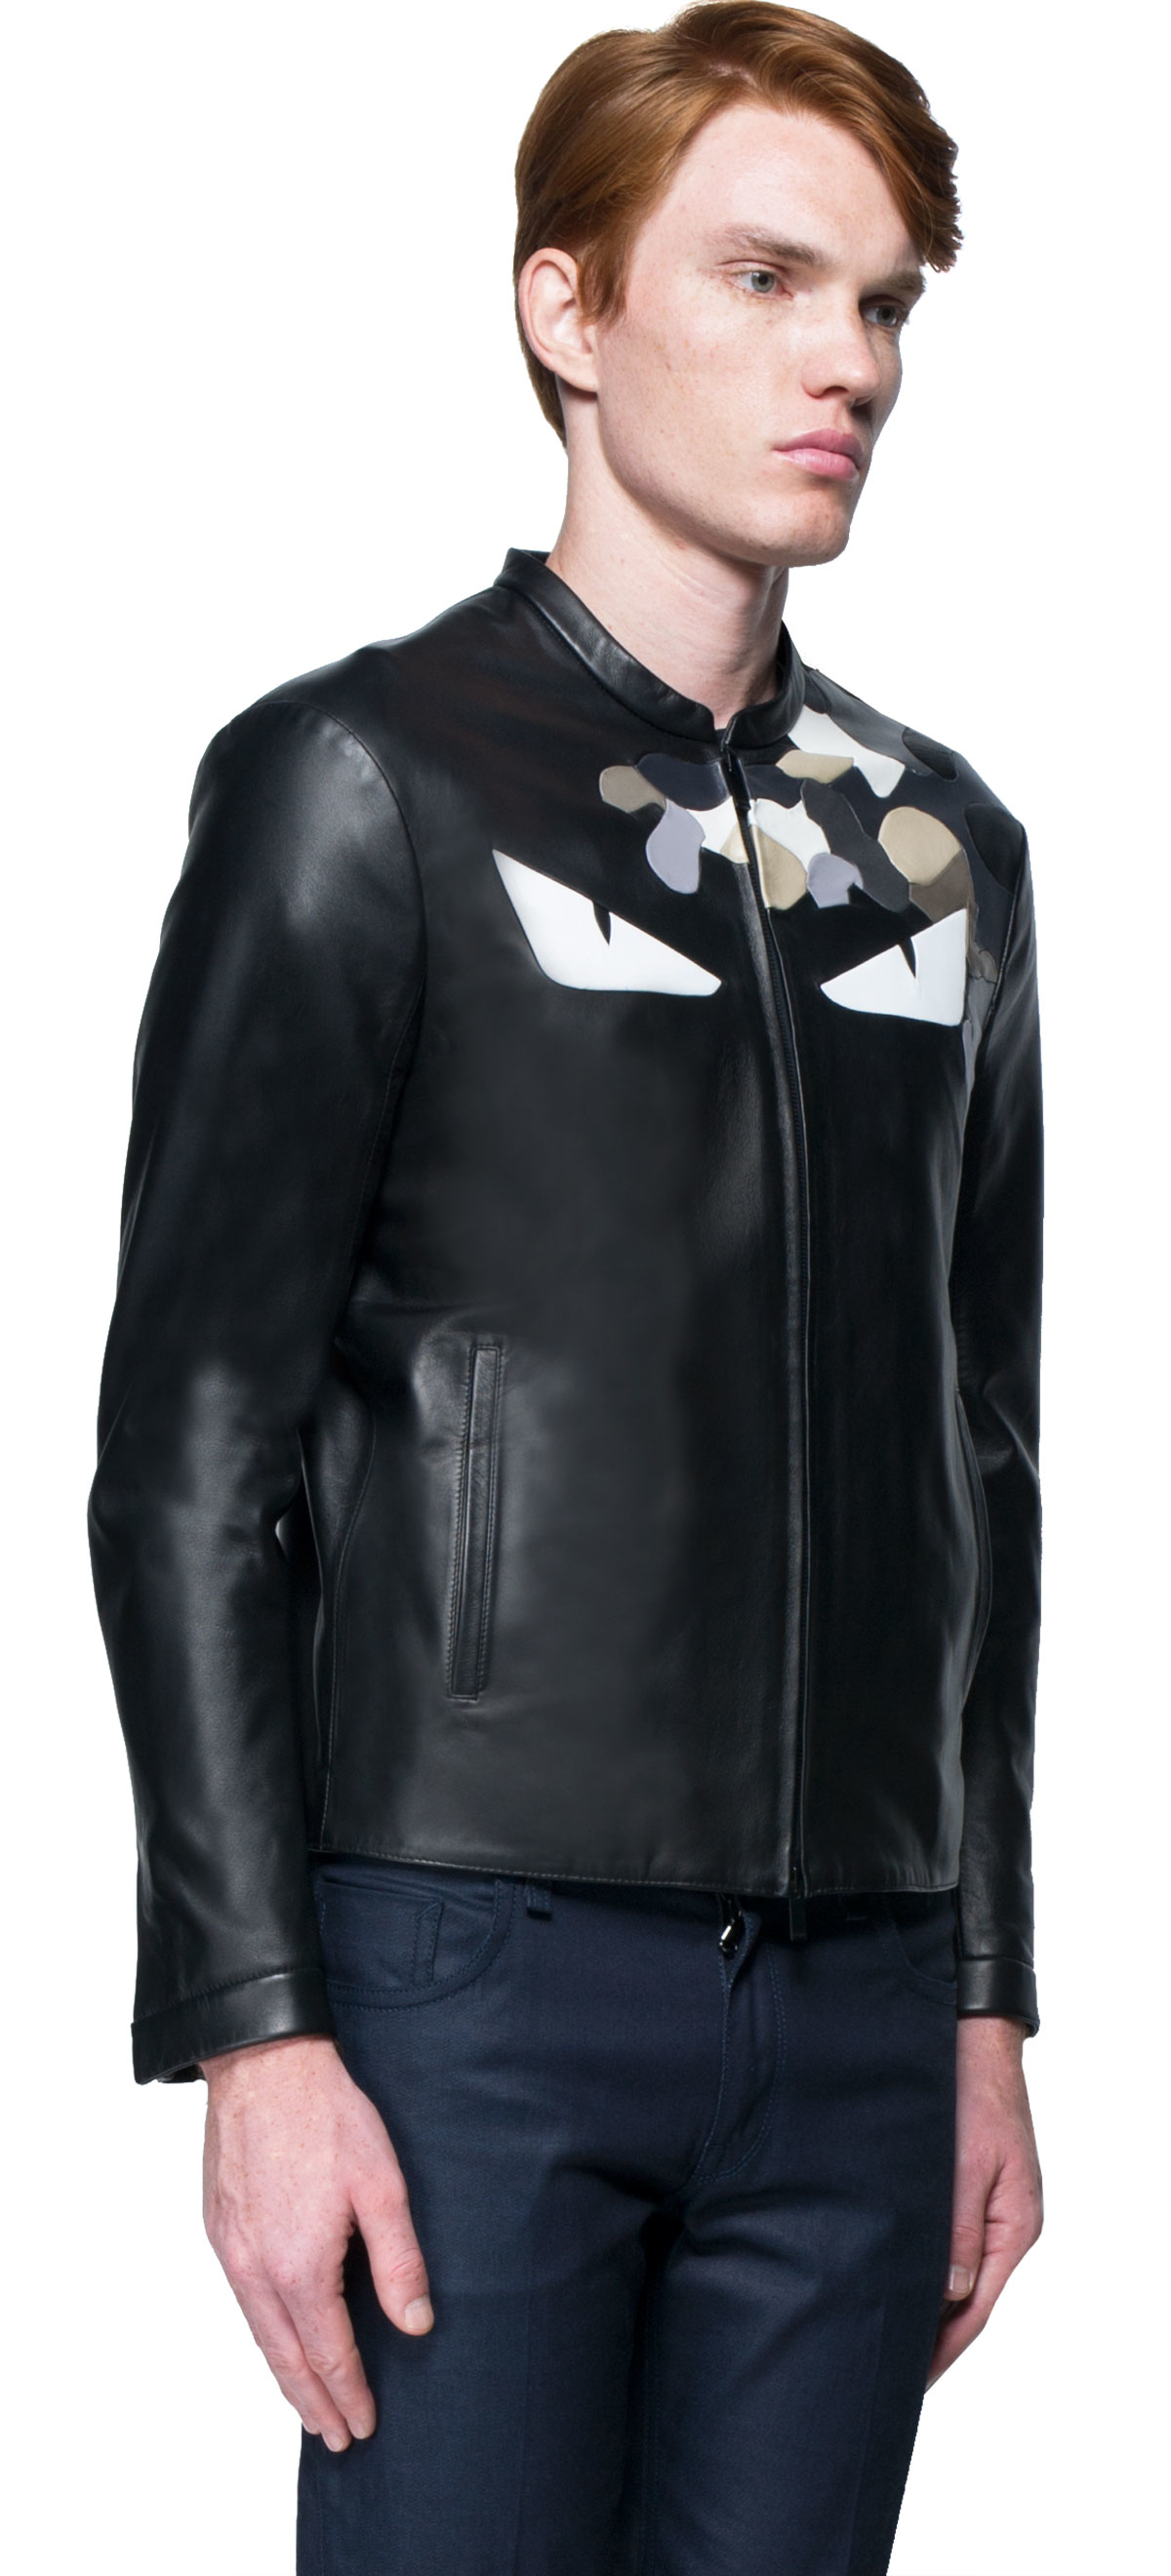 fendi leather jacket mens